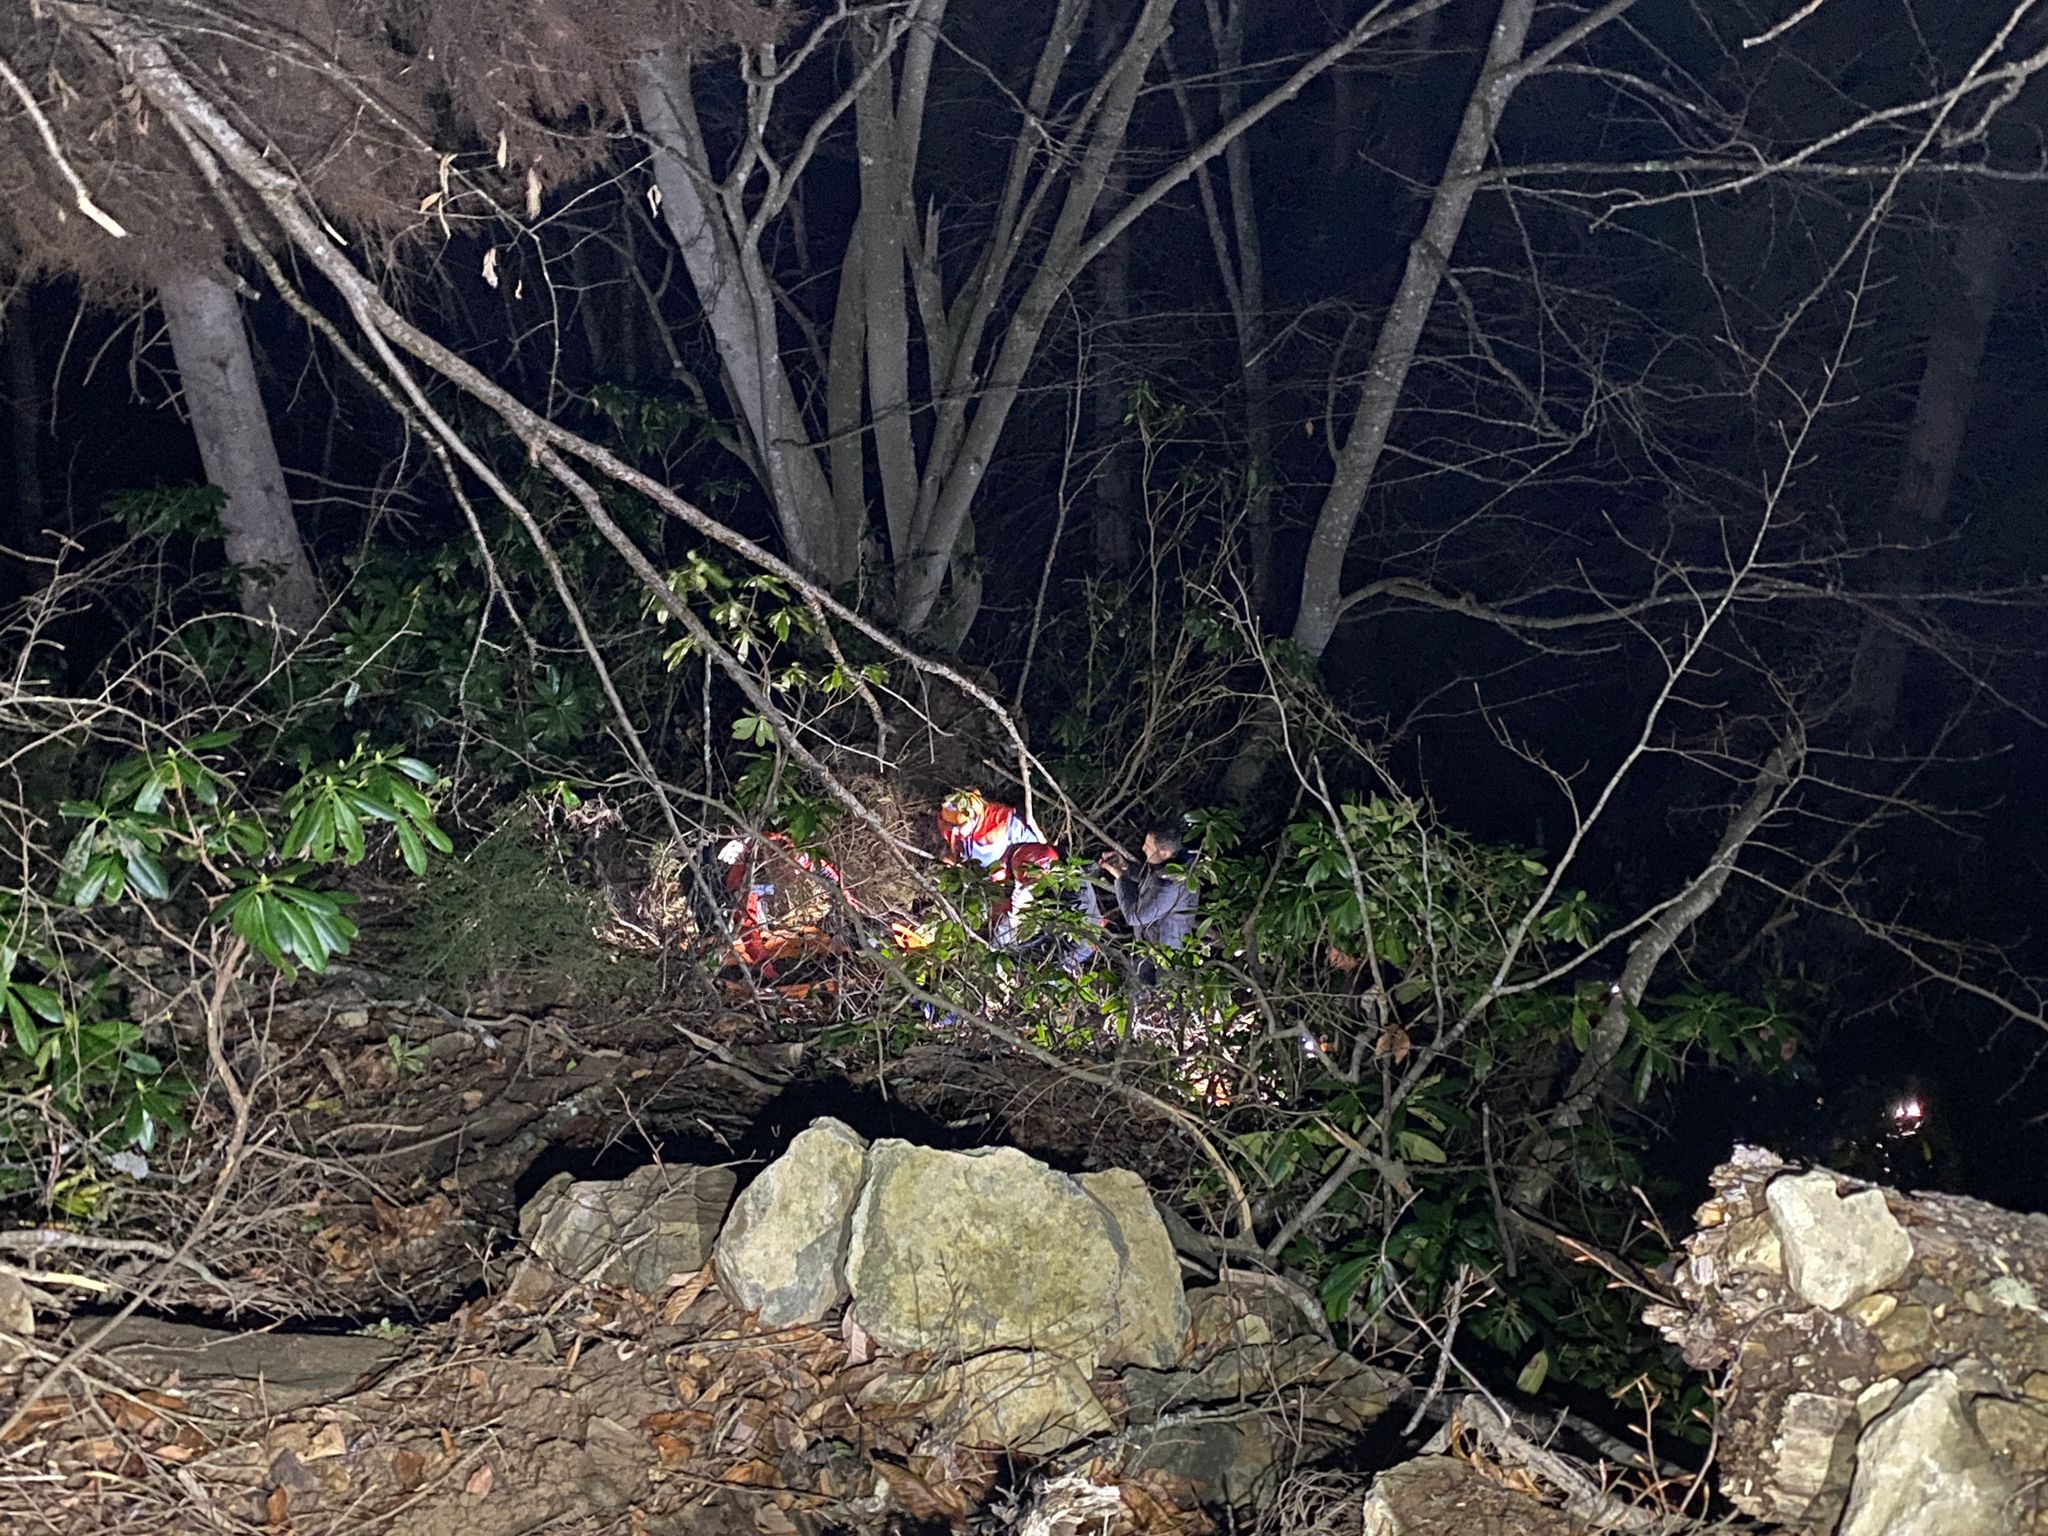 Artvin’de ormanda ağaç keserken uçurumdan düşen kişi öldü